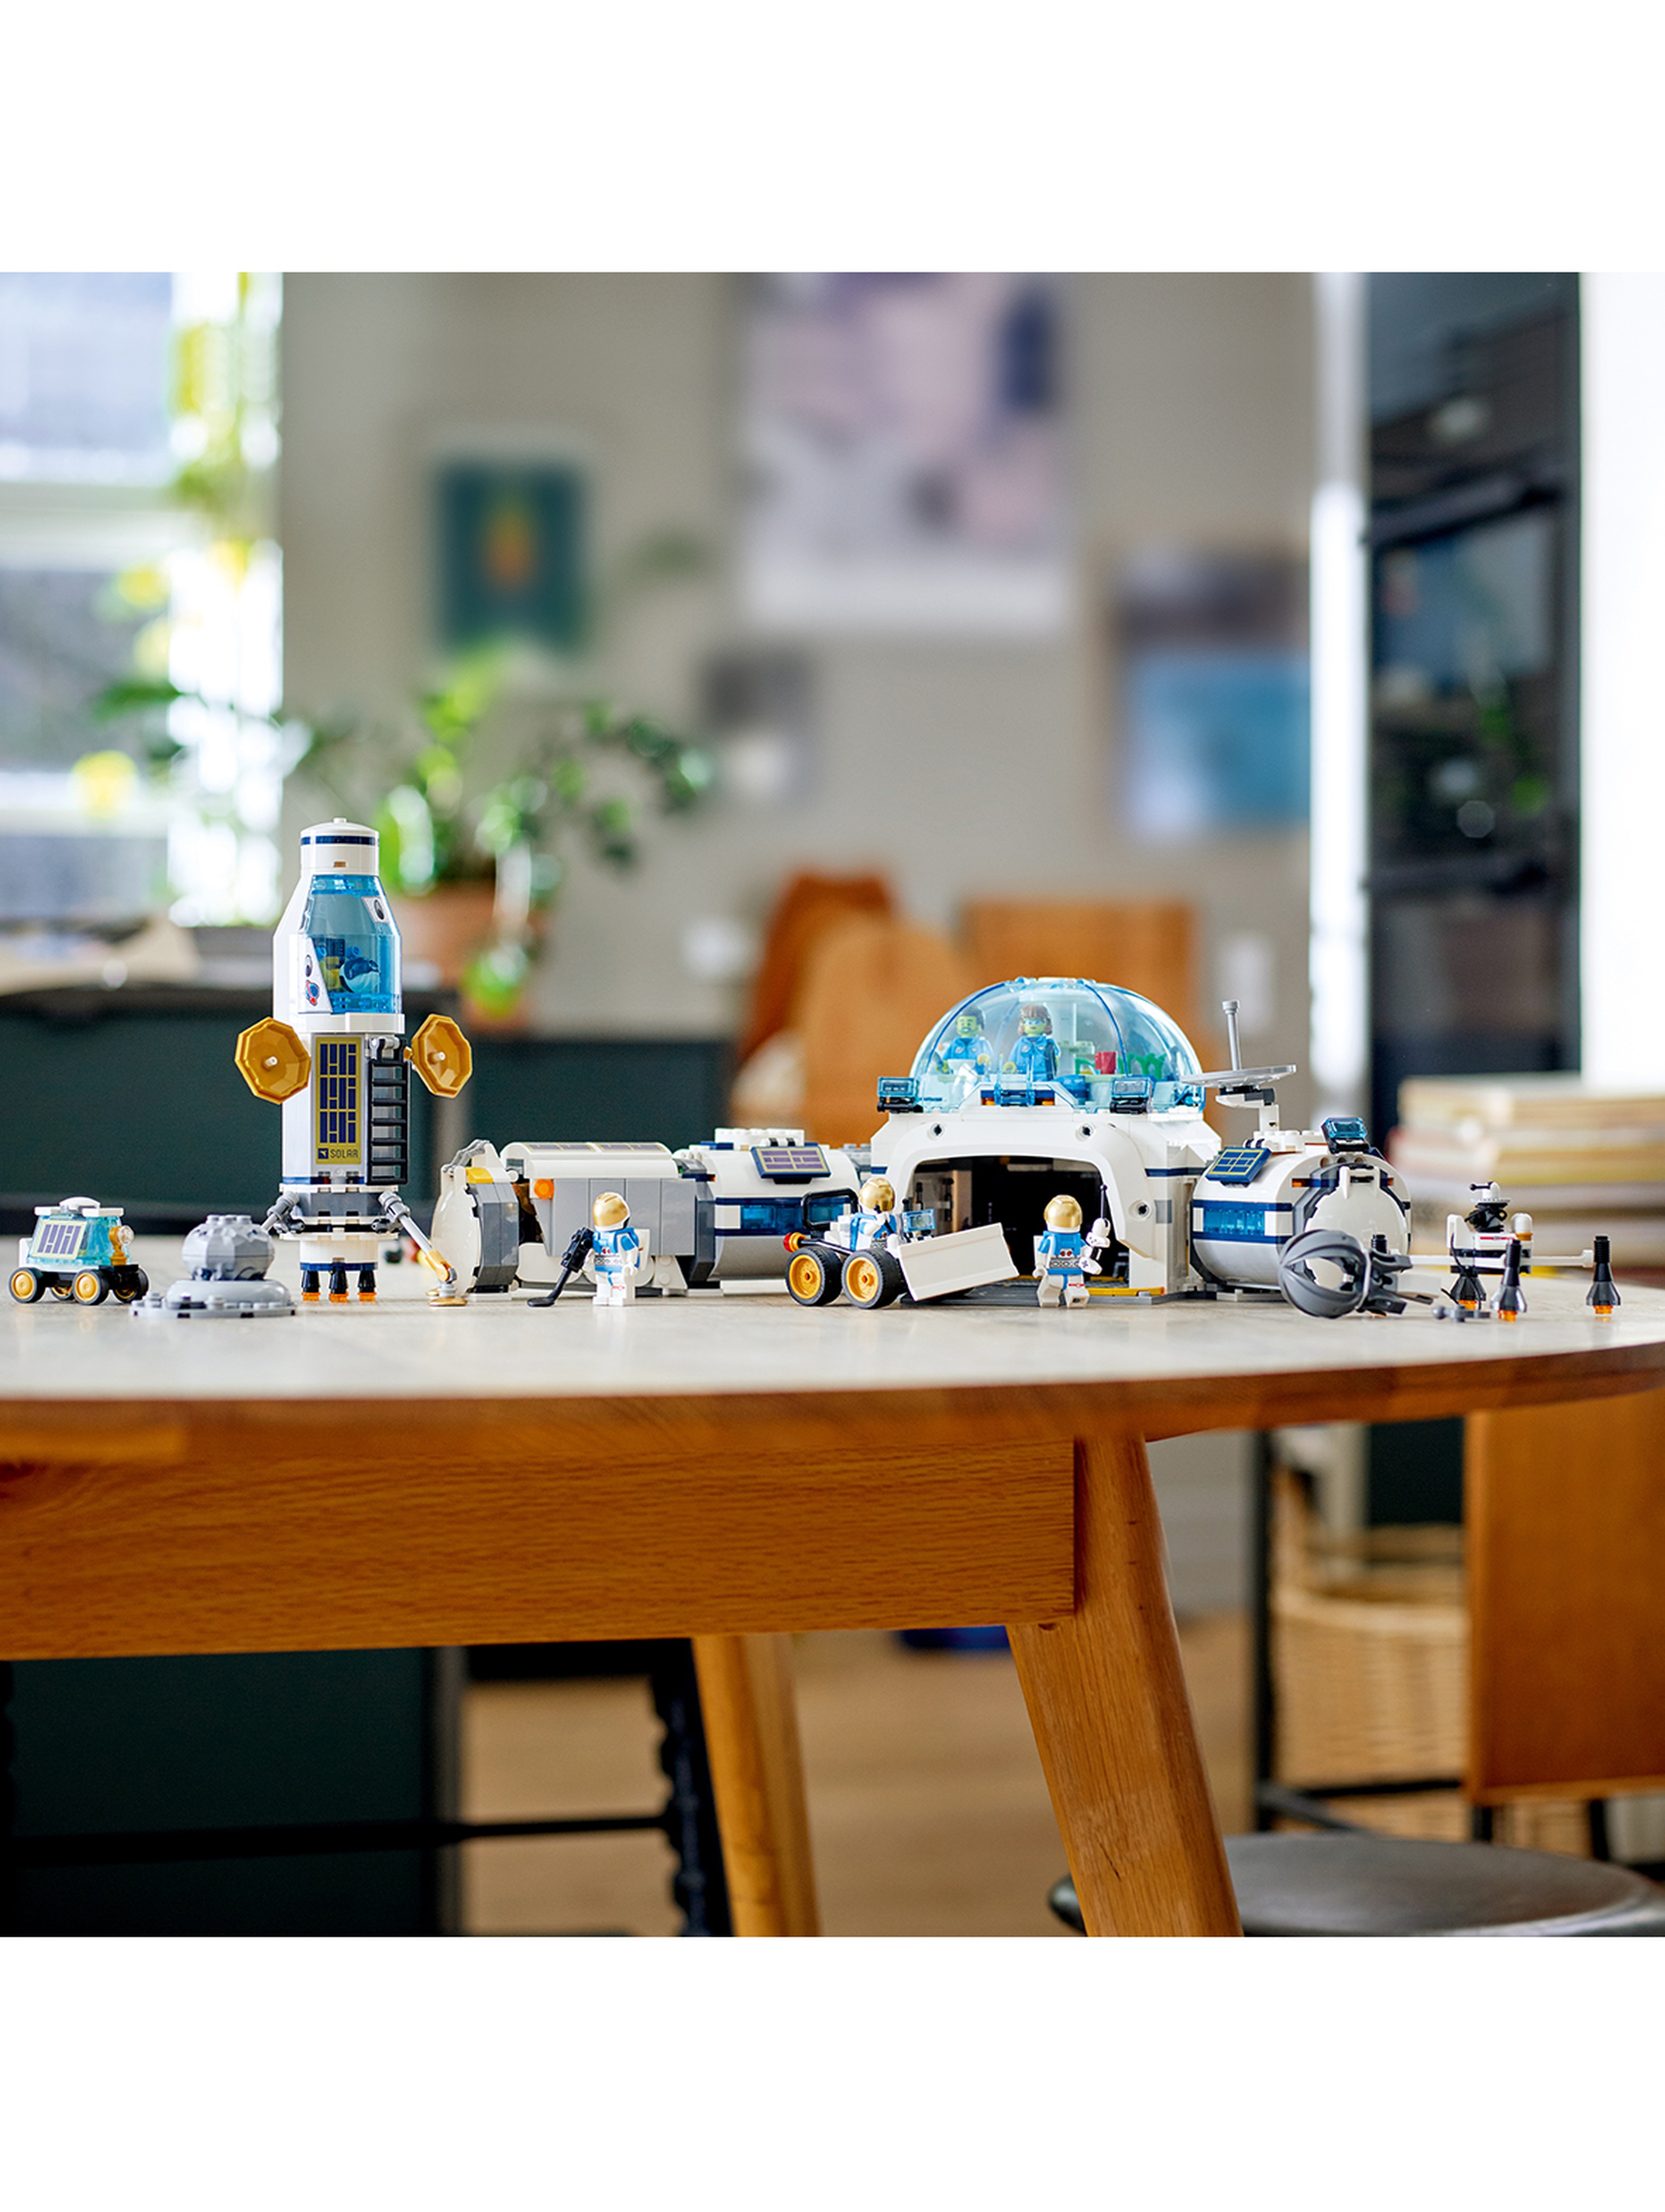 LEGO City - Stacja badawcza na Księżycu 60350 - 786 elementów, wiek 7+